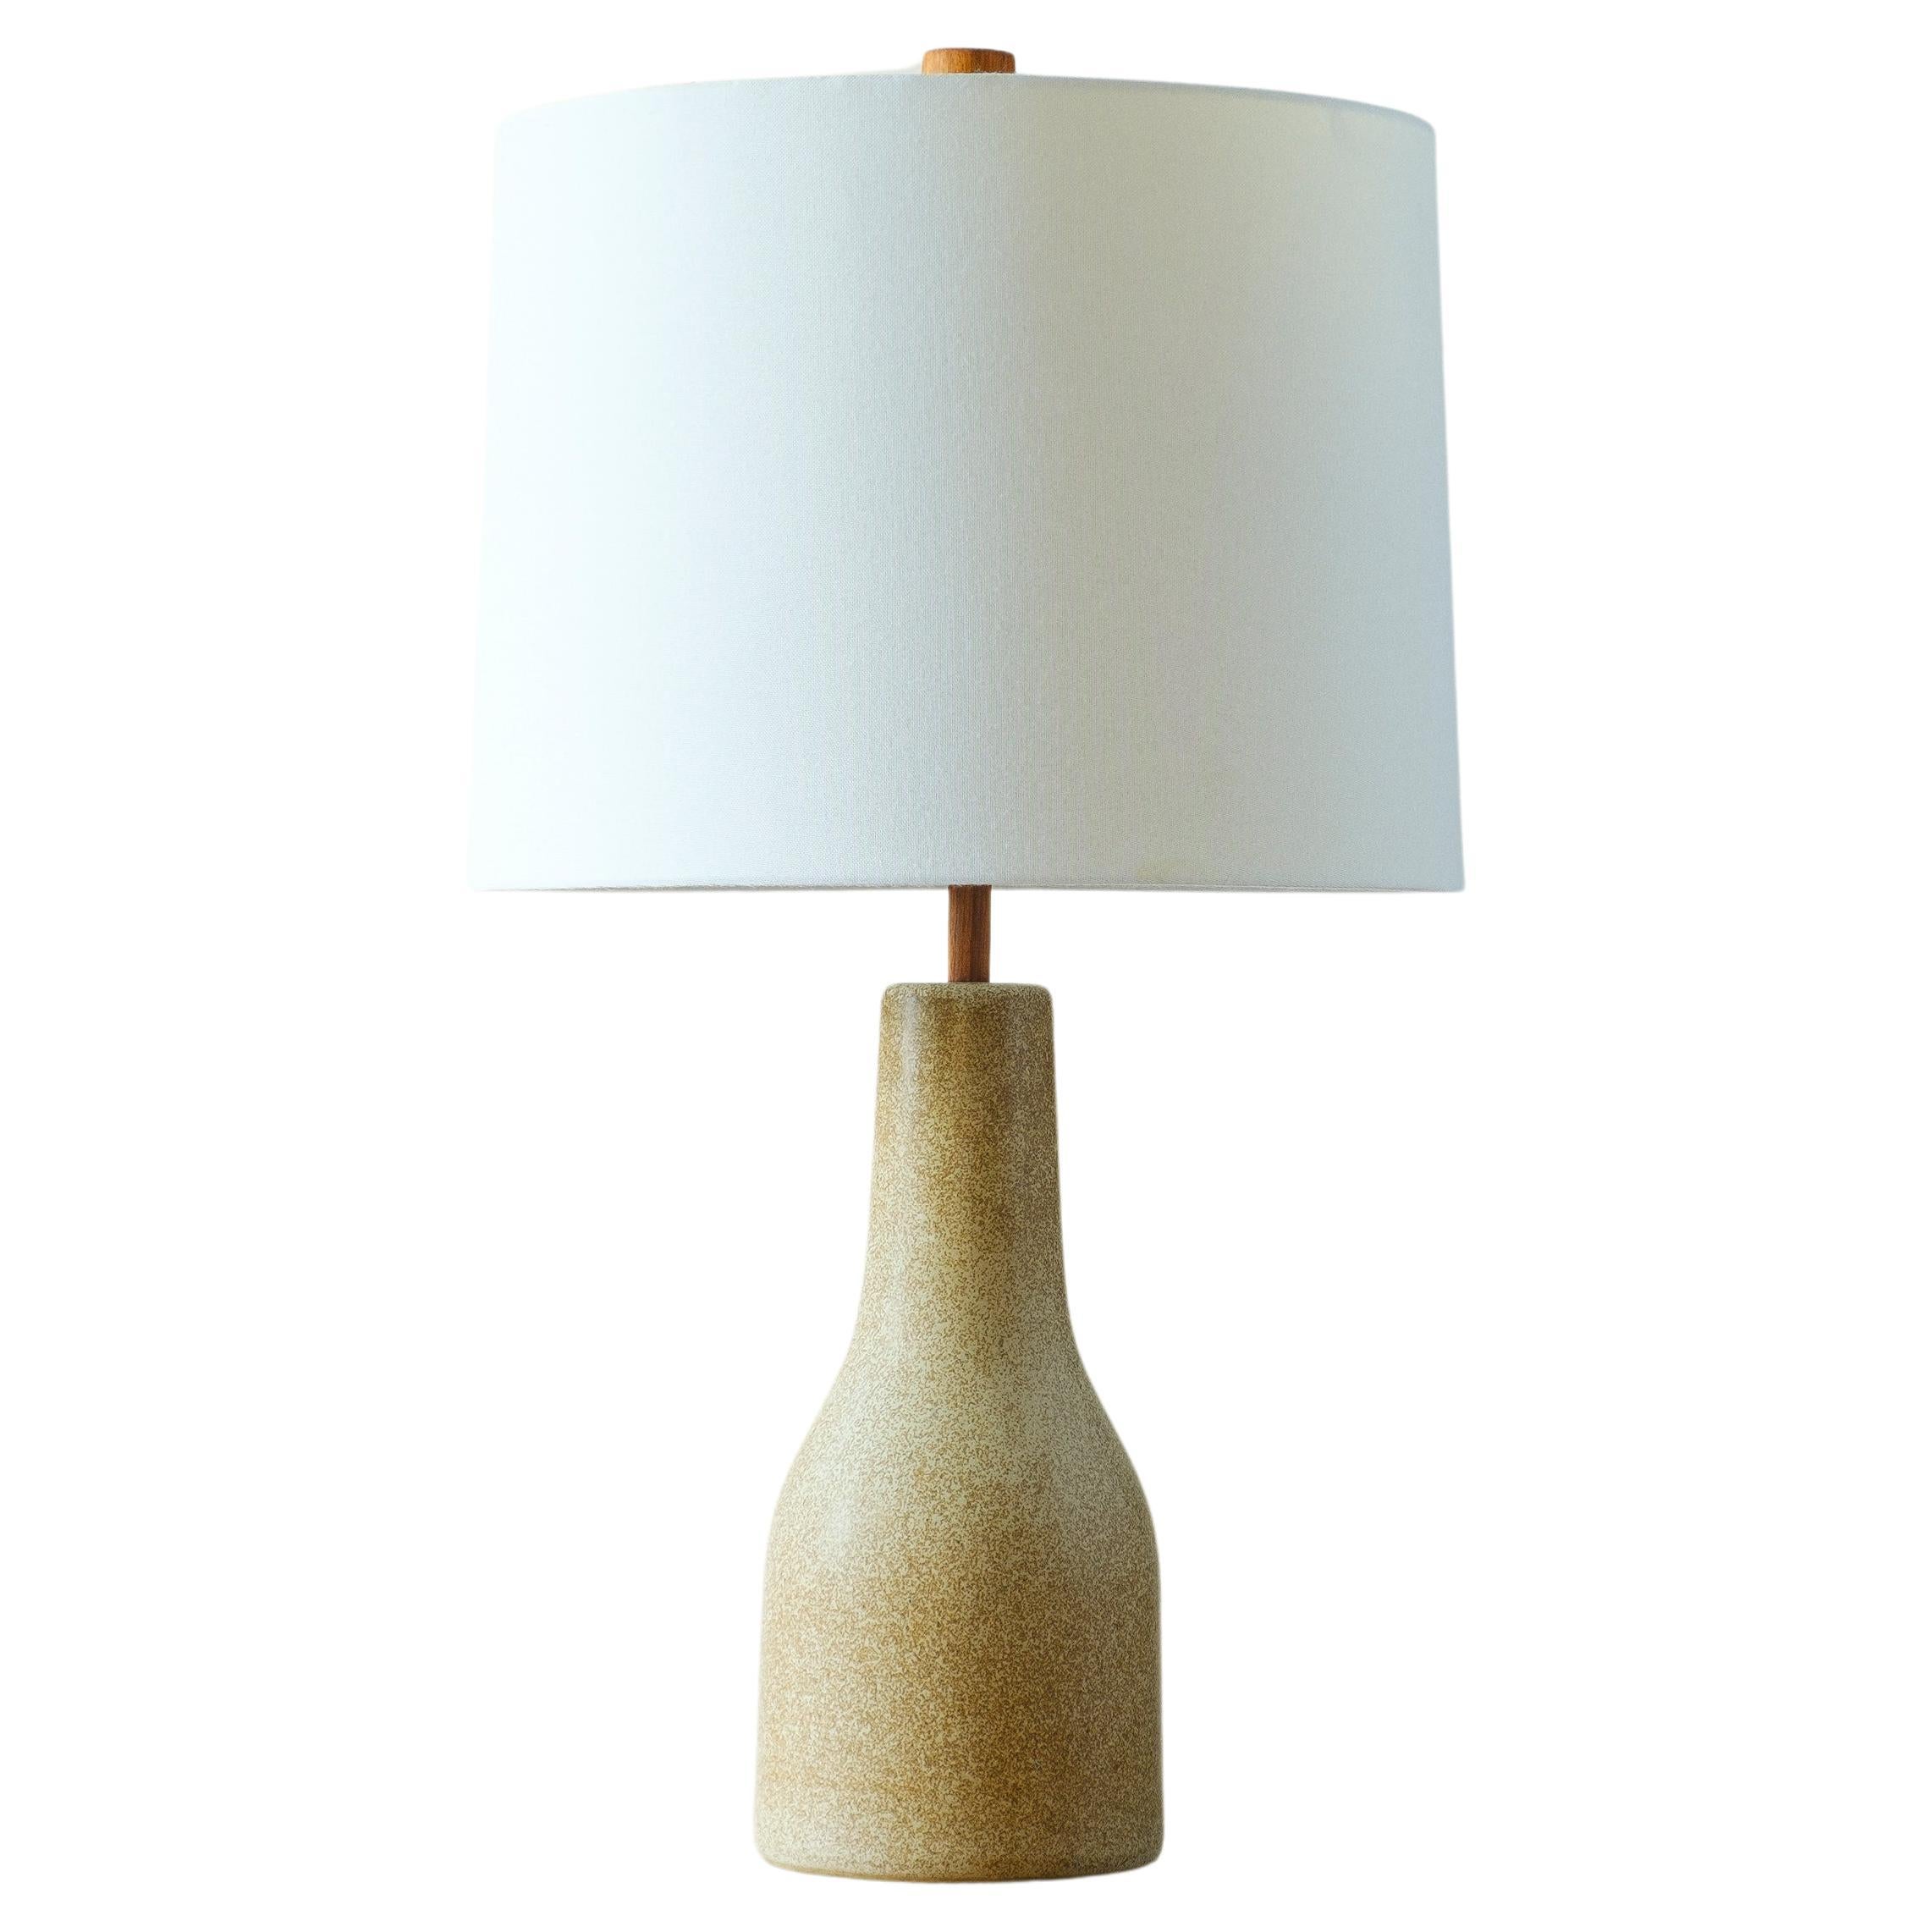 Martz / Marshall Studios Ceramic Table Lamp, Tan with tiny Neck